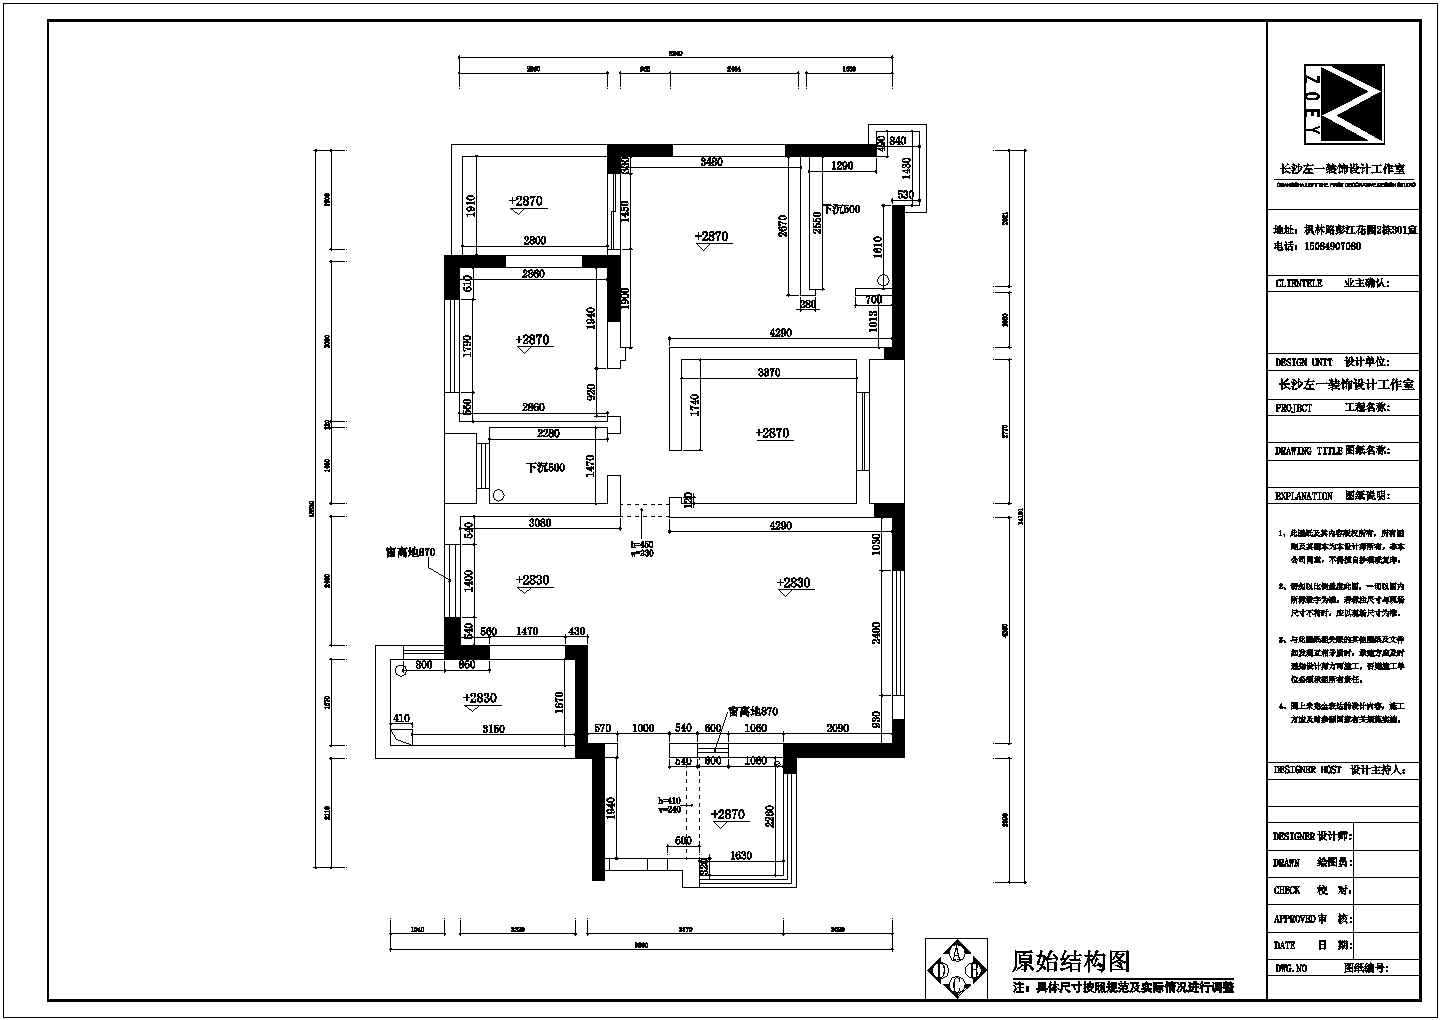 一套完整的三室二厅简欧住宅装修施工图